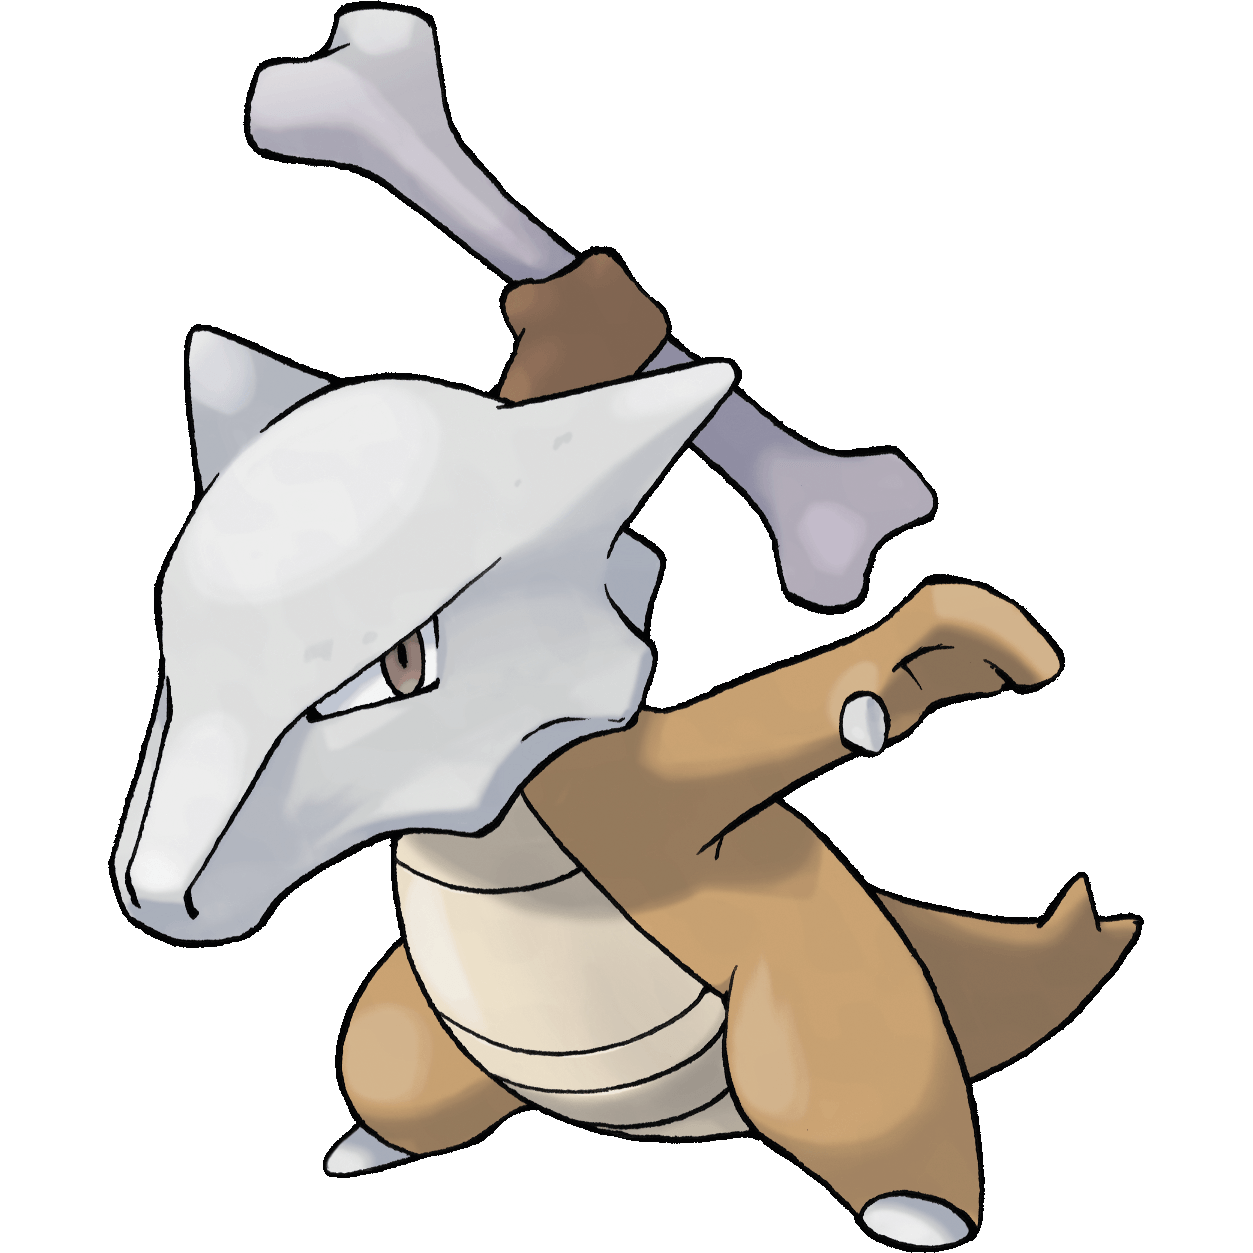 Phantump (Pokémon) - Bulbapedia, the community-driven Pokémon